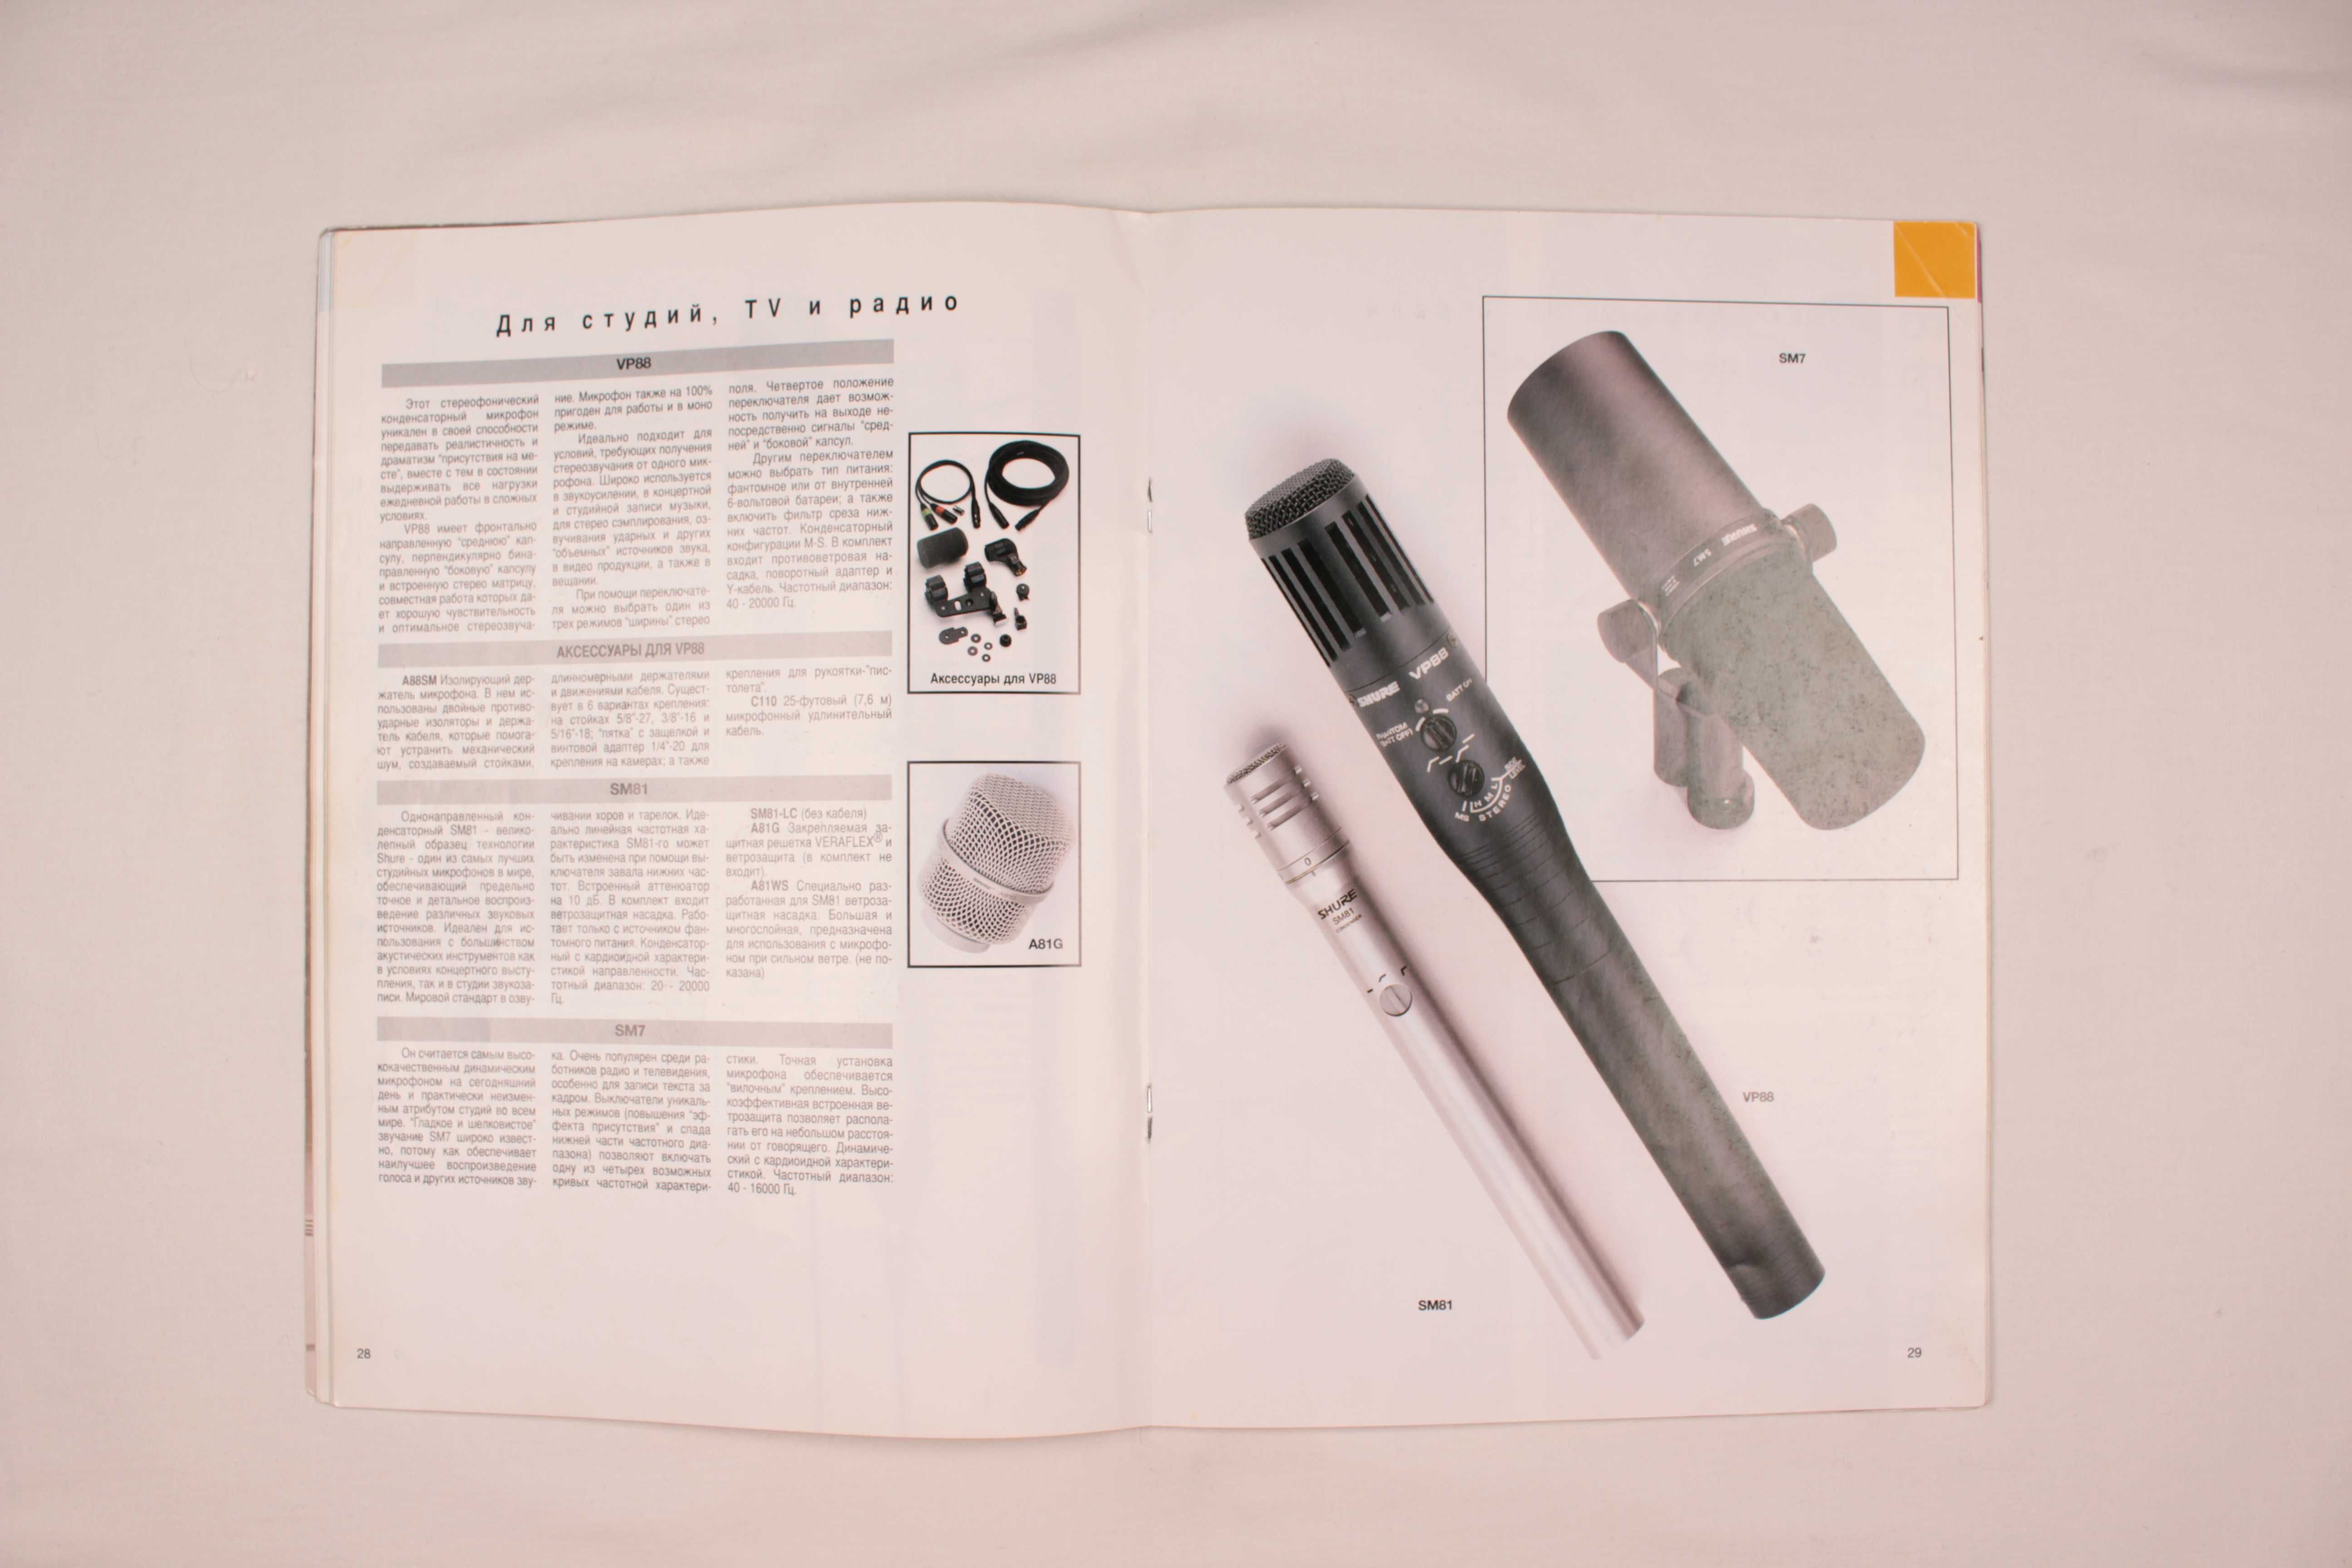 Фирменный музыкальный каталог - журнал продукции SHURE - 1997